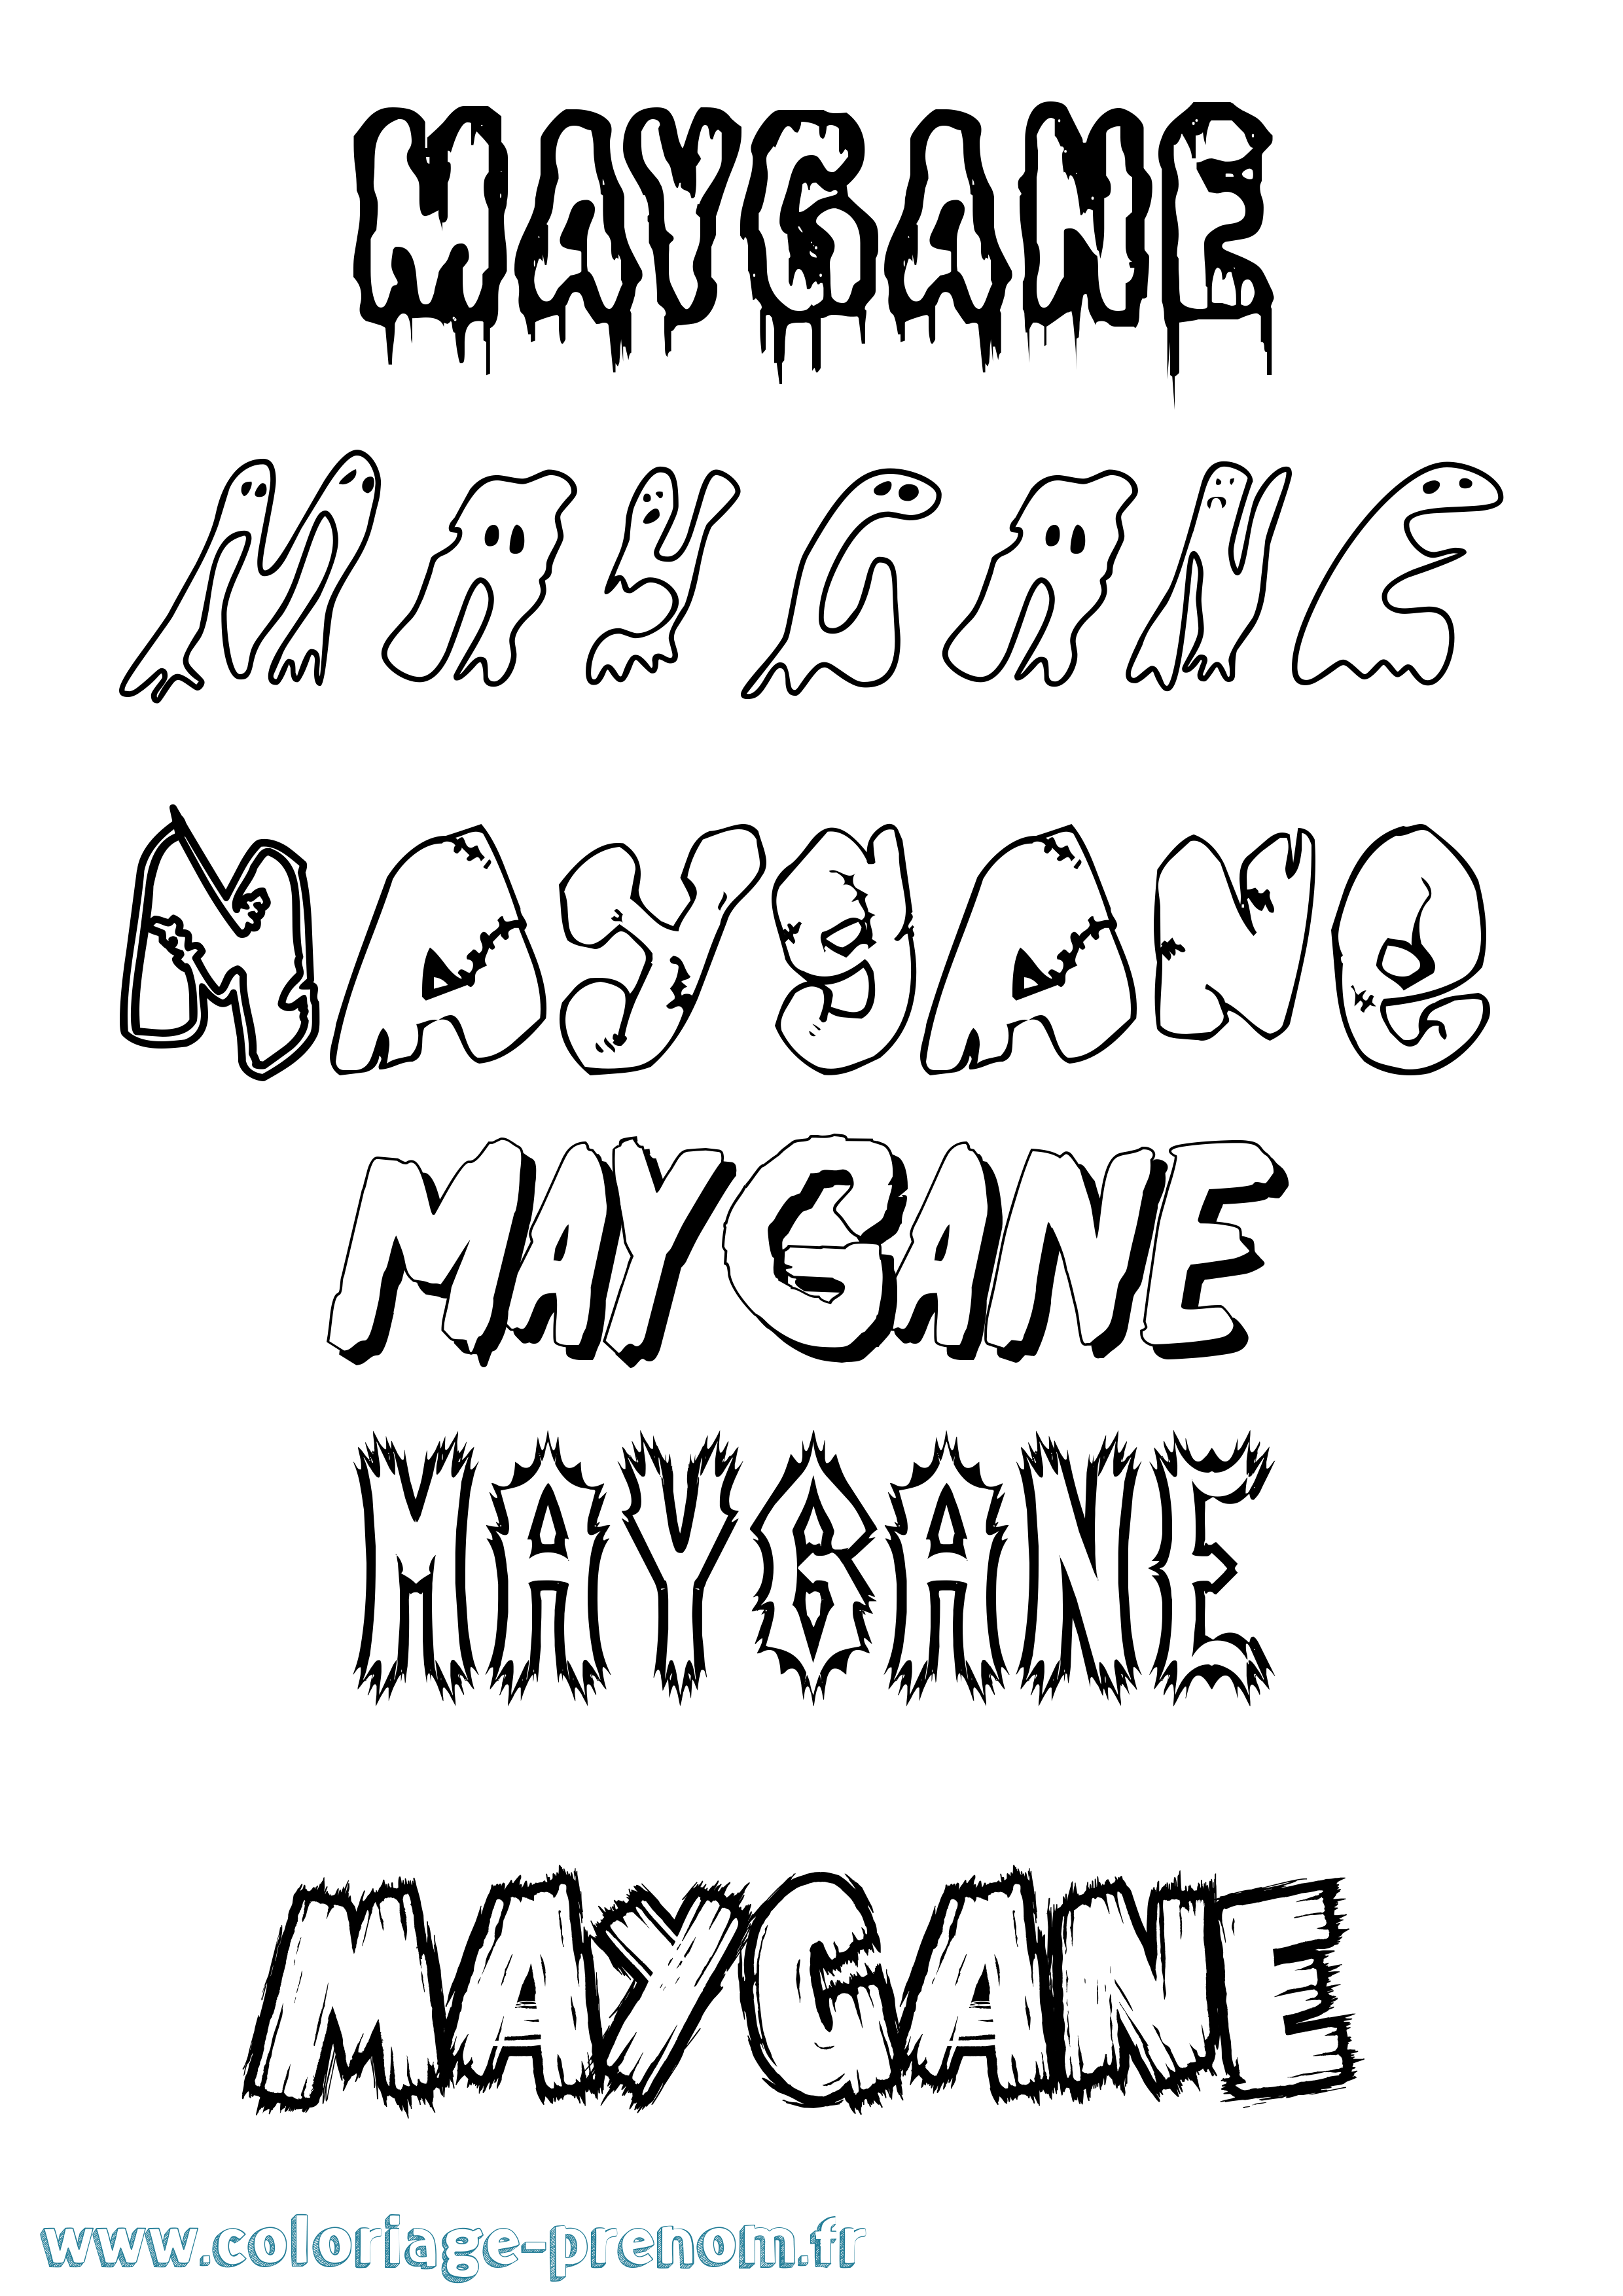 Coloriage prénom Maygane Frisson